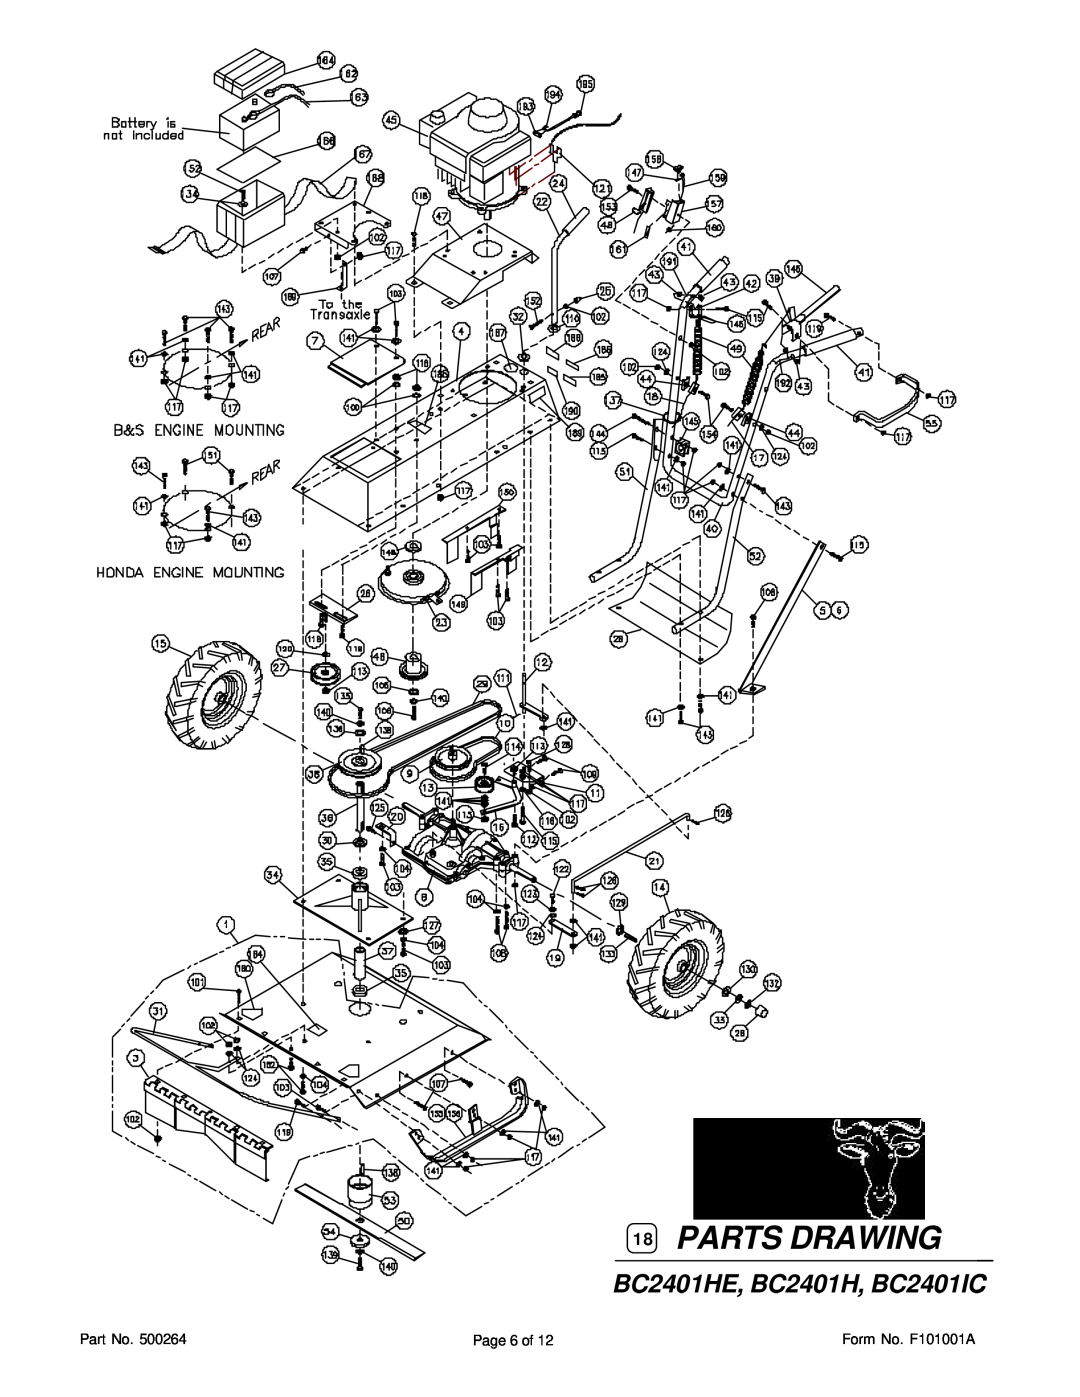 Honda Power Equipment HRR216VKA owner manual BC2401HE, BC2401H, BC2401IC, Parts Drawing 